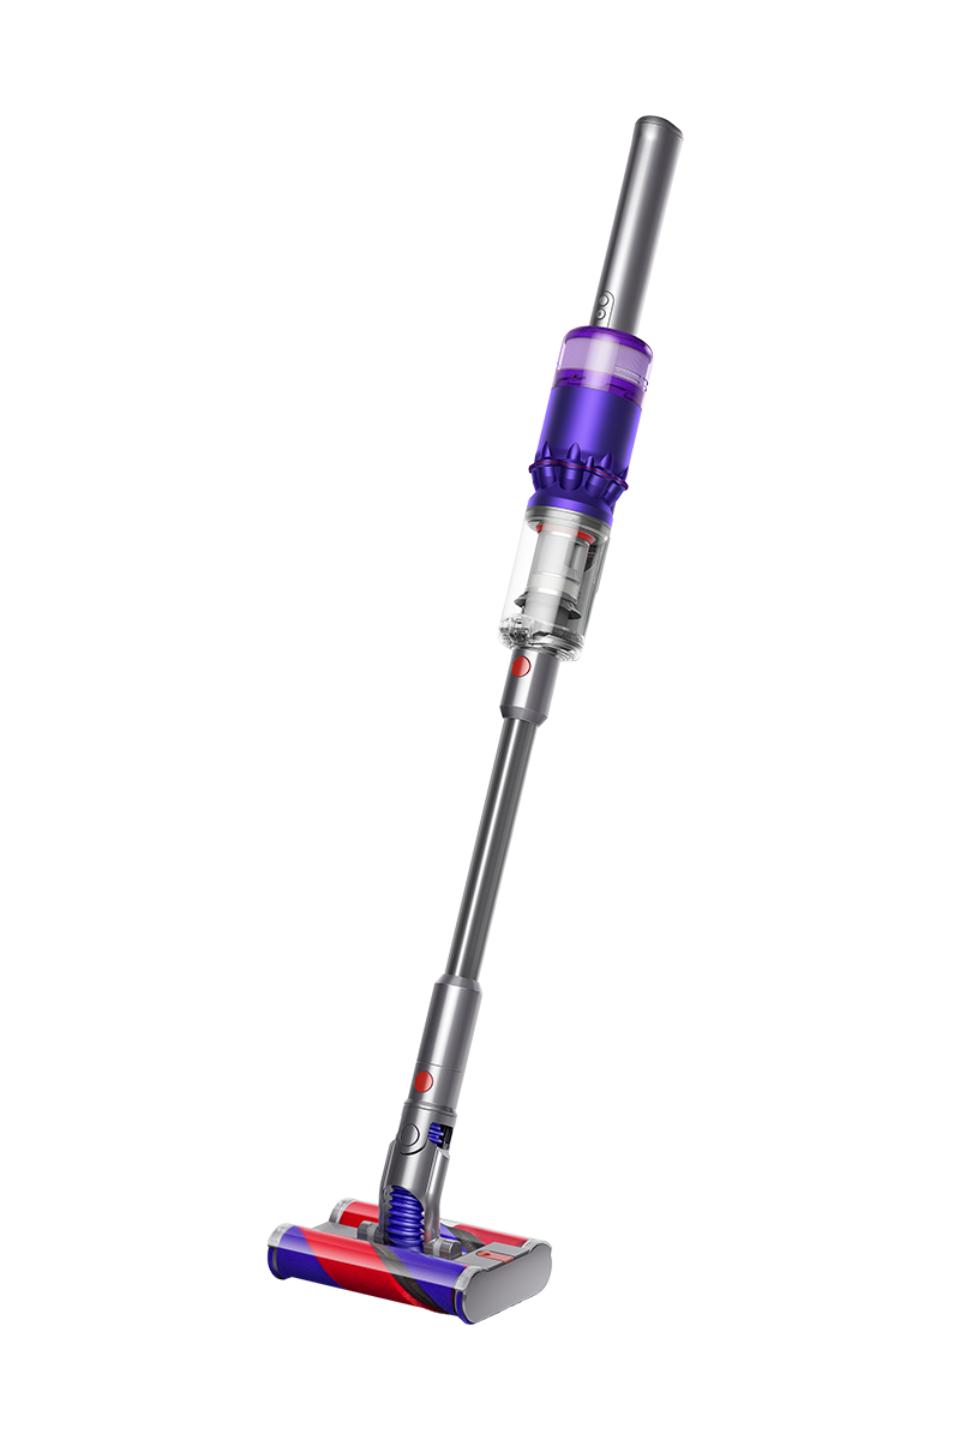 Dyson Omni-glide vacuum in purple